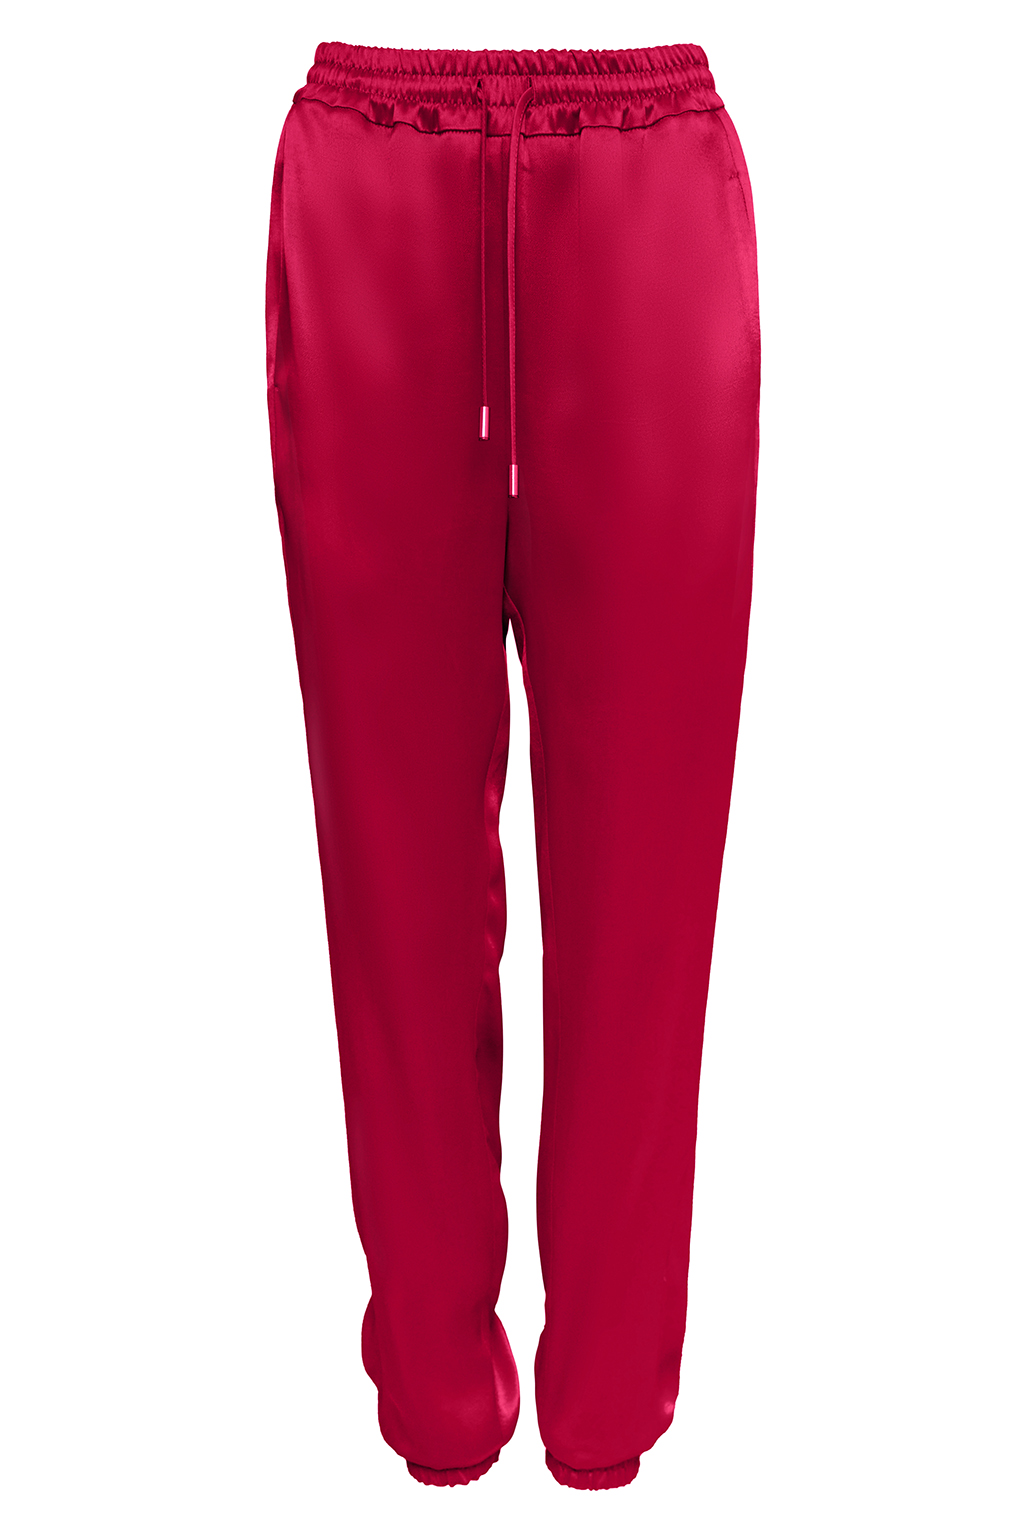 Спортивные брюки женские PAOLA RAY PR121-5029 красные XS